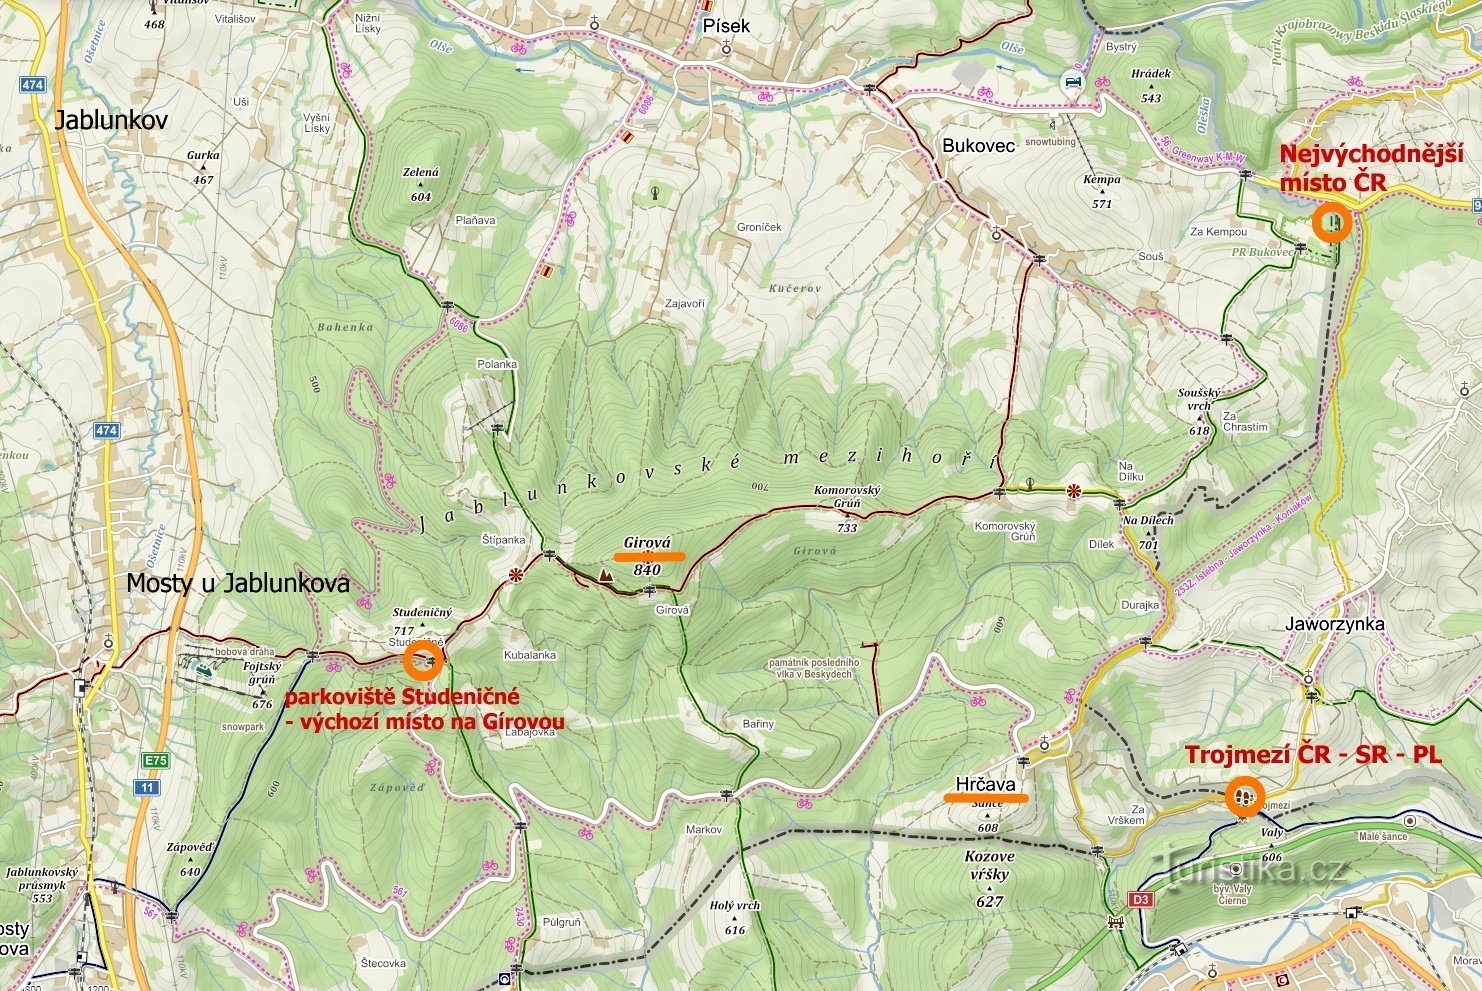 kartta vierailluista paikoista: Tšekin tasavallan itäisin piste, Hrčava - Trojmezí, Jablunkovské m